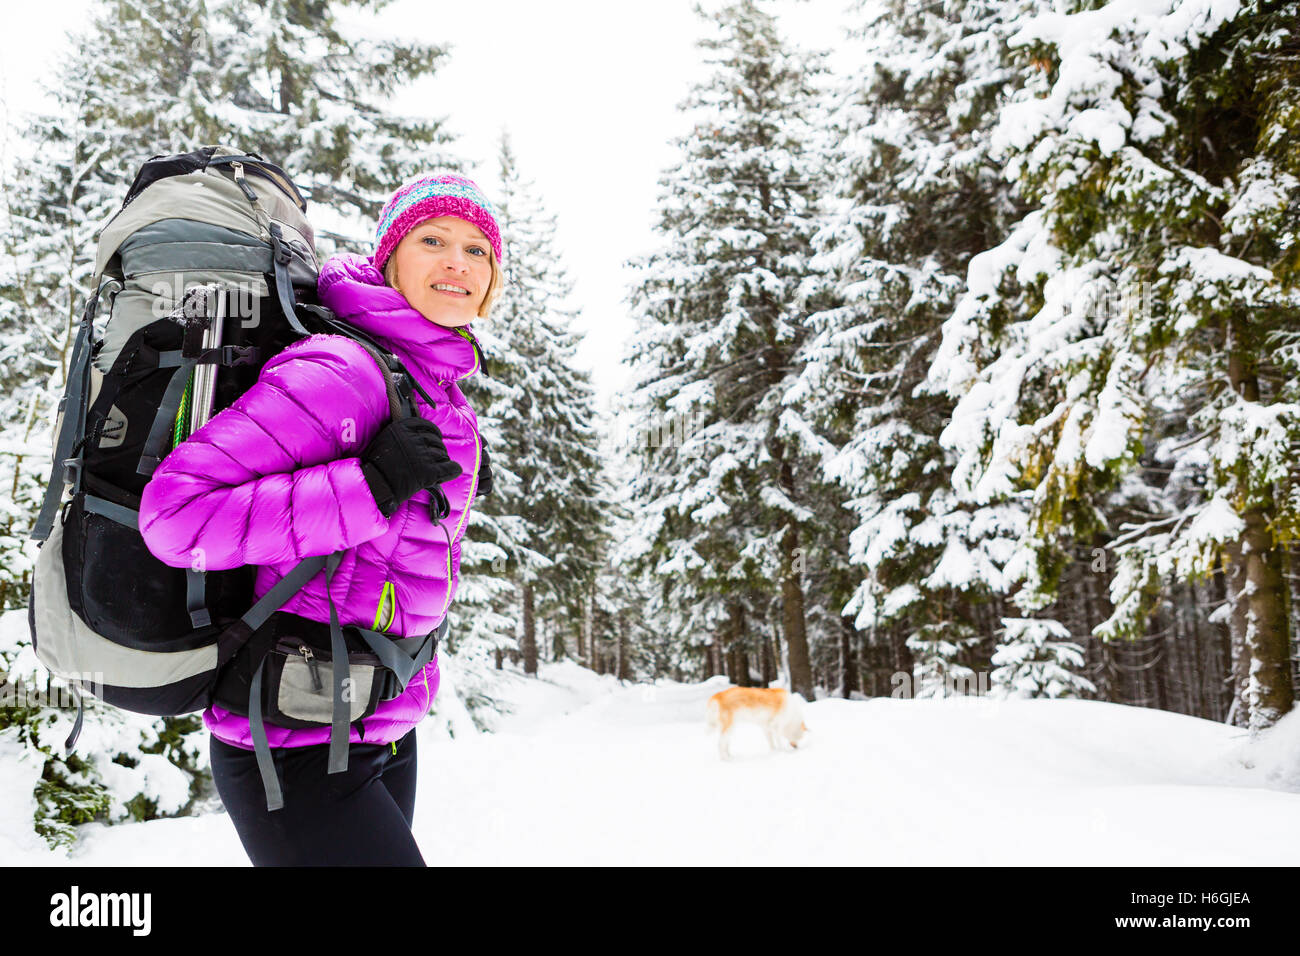 Wandern, trekking im Winterwald mit Akita Hund Frau. Erholung, Fitness und einen gesunden Lebensstil im Freien in schöne verschneite natur Stockfoto